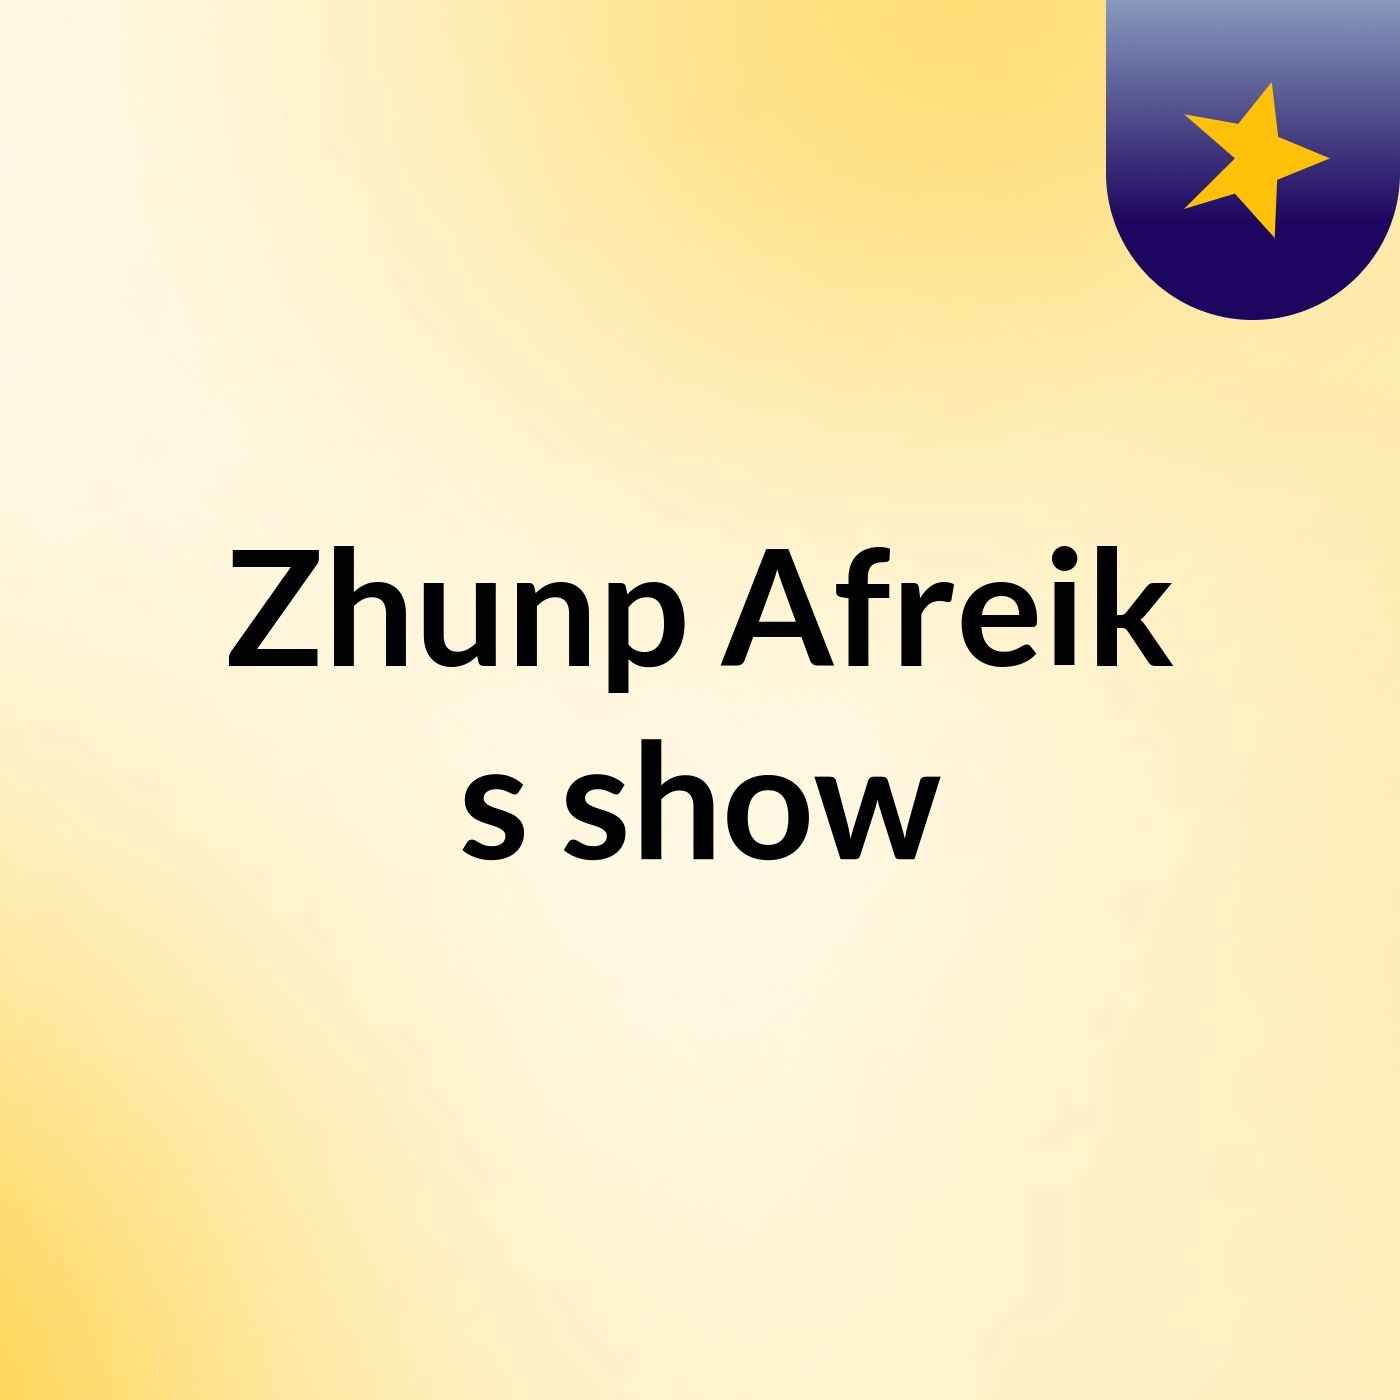 Zhunp Afreik's show